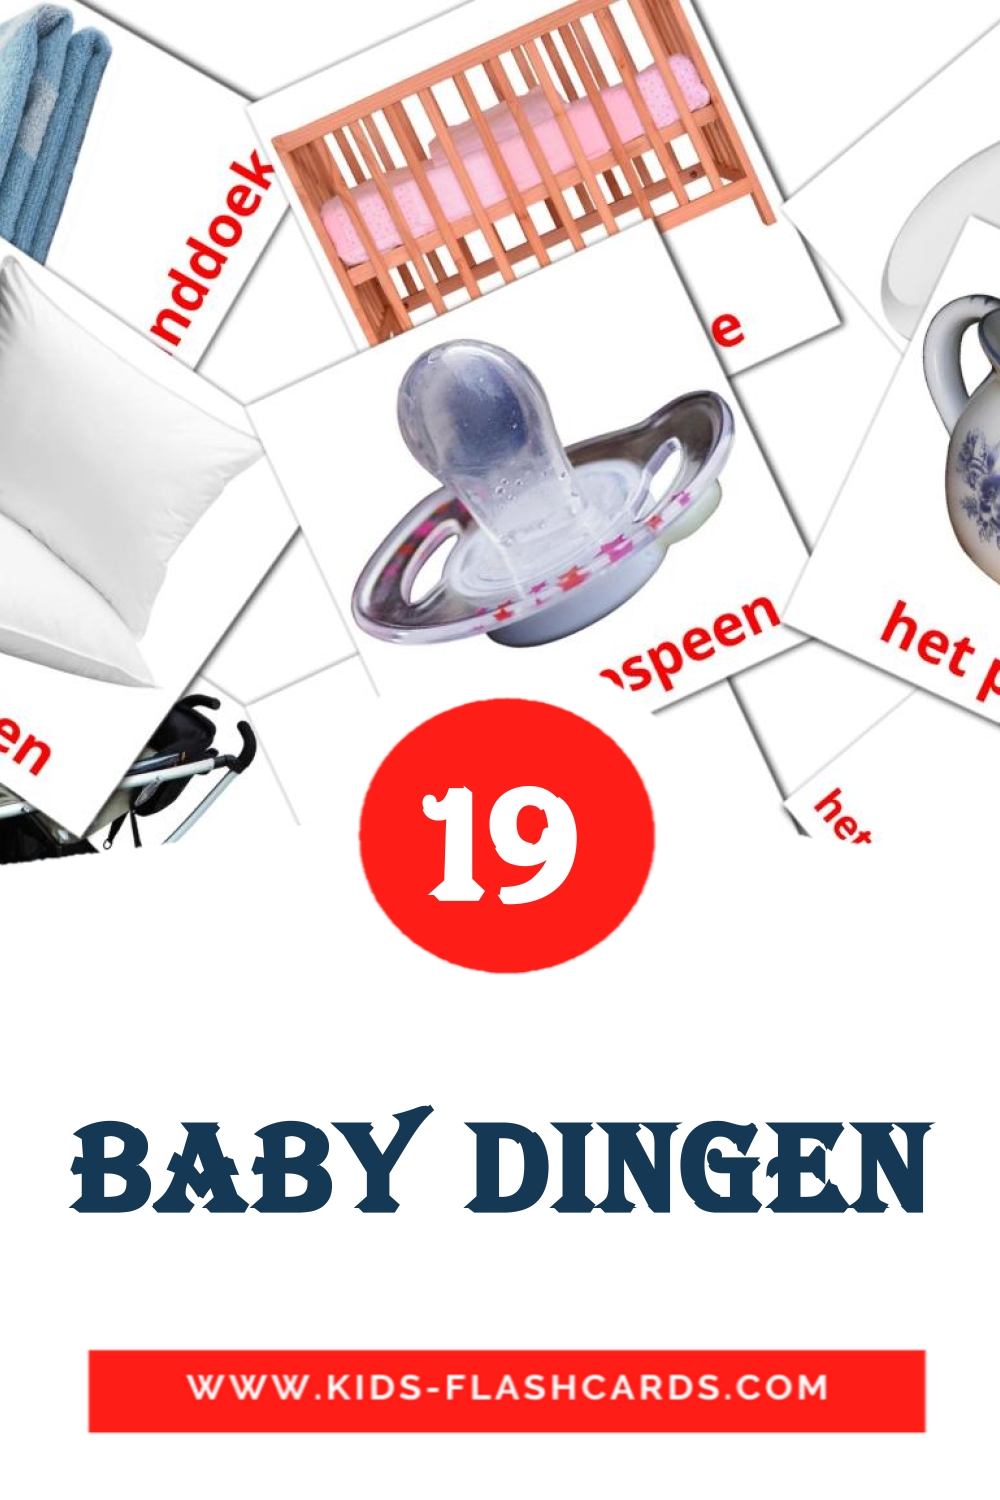 19 tarjetas didacticas de Baby dingen para el jardín de infancia en holandés